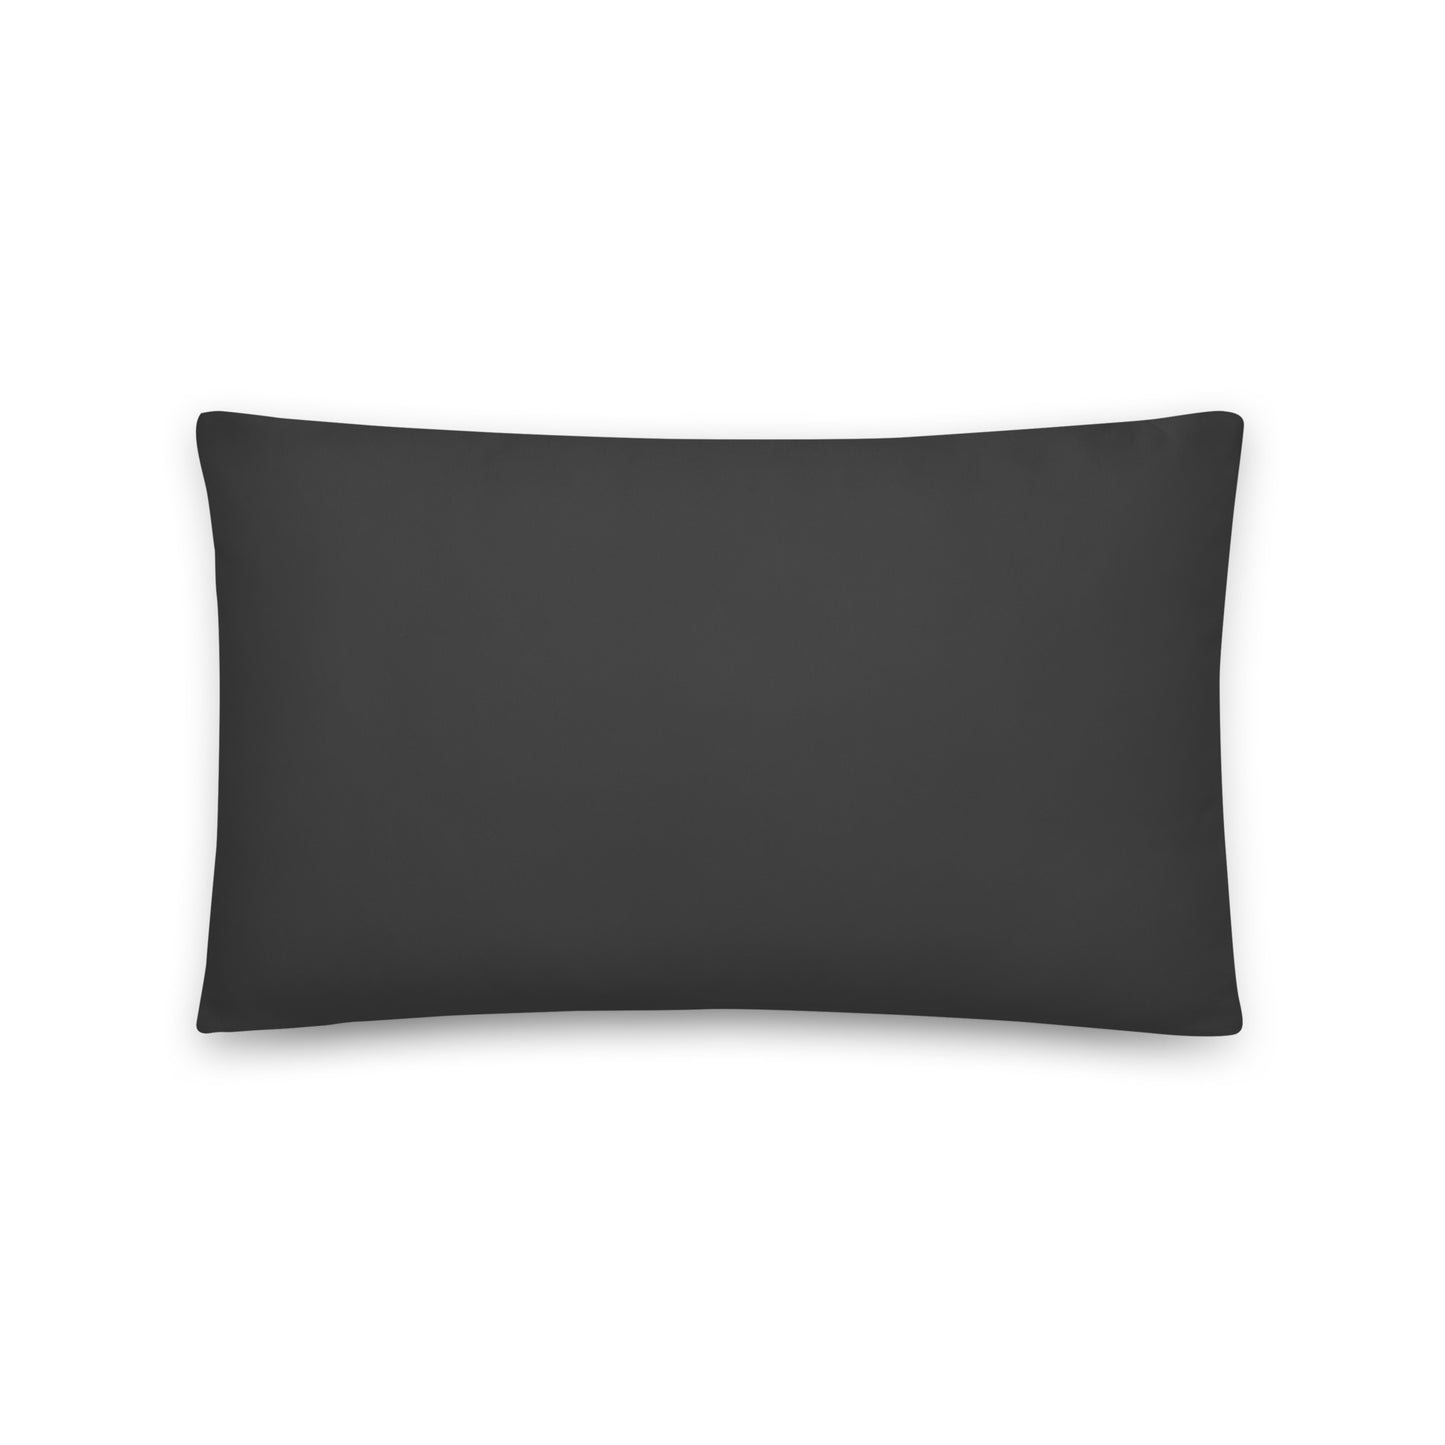 Unique Travel Gift Throw Pillow - White Oval • GVA Geneva • YHM Designs - Image 02